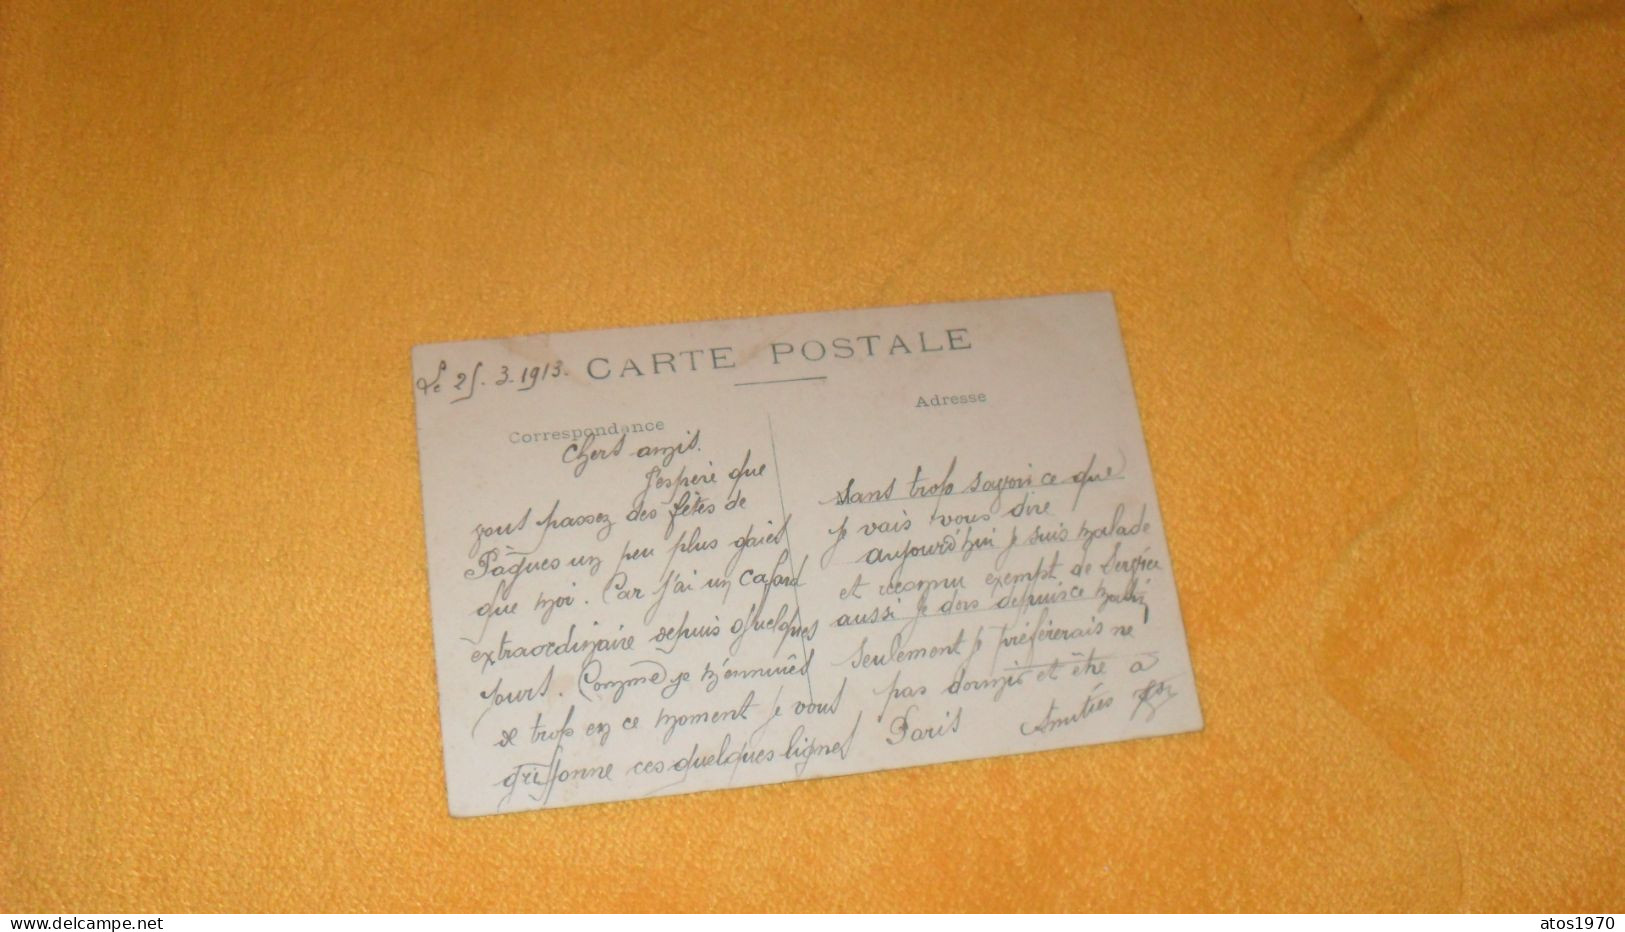 CARTE POSTALE ANCIENNE CIRCULEE DE 1913../ CHALONS SUR MARNE.- PLACE SAINT JACQUES...TRES ANIMEE.. - Châlons-sur-Marne